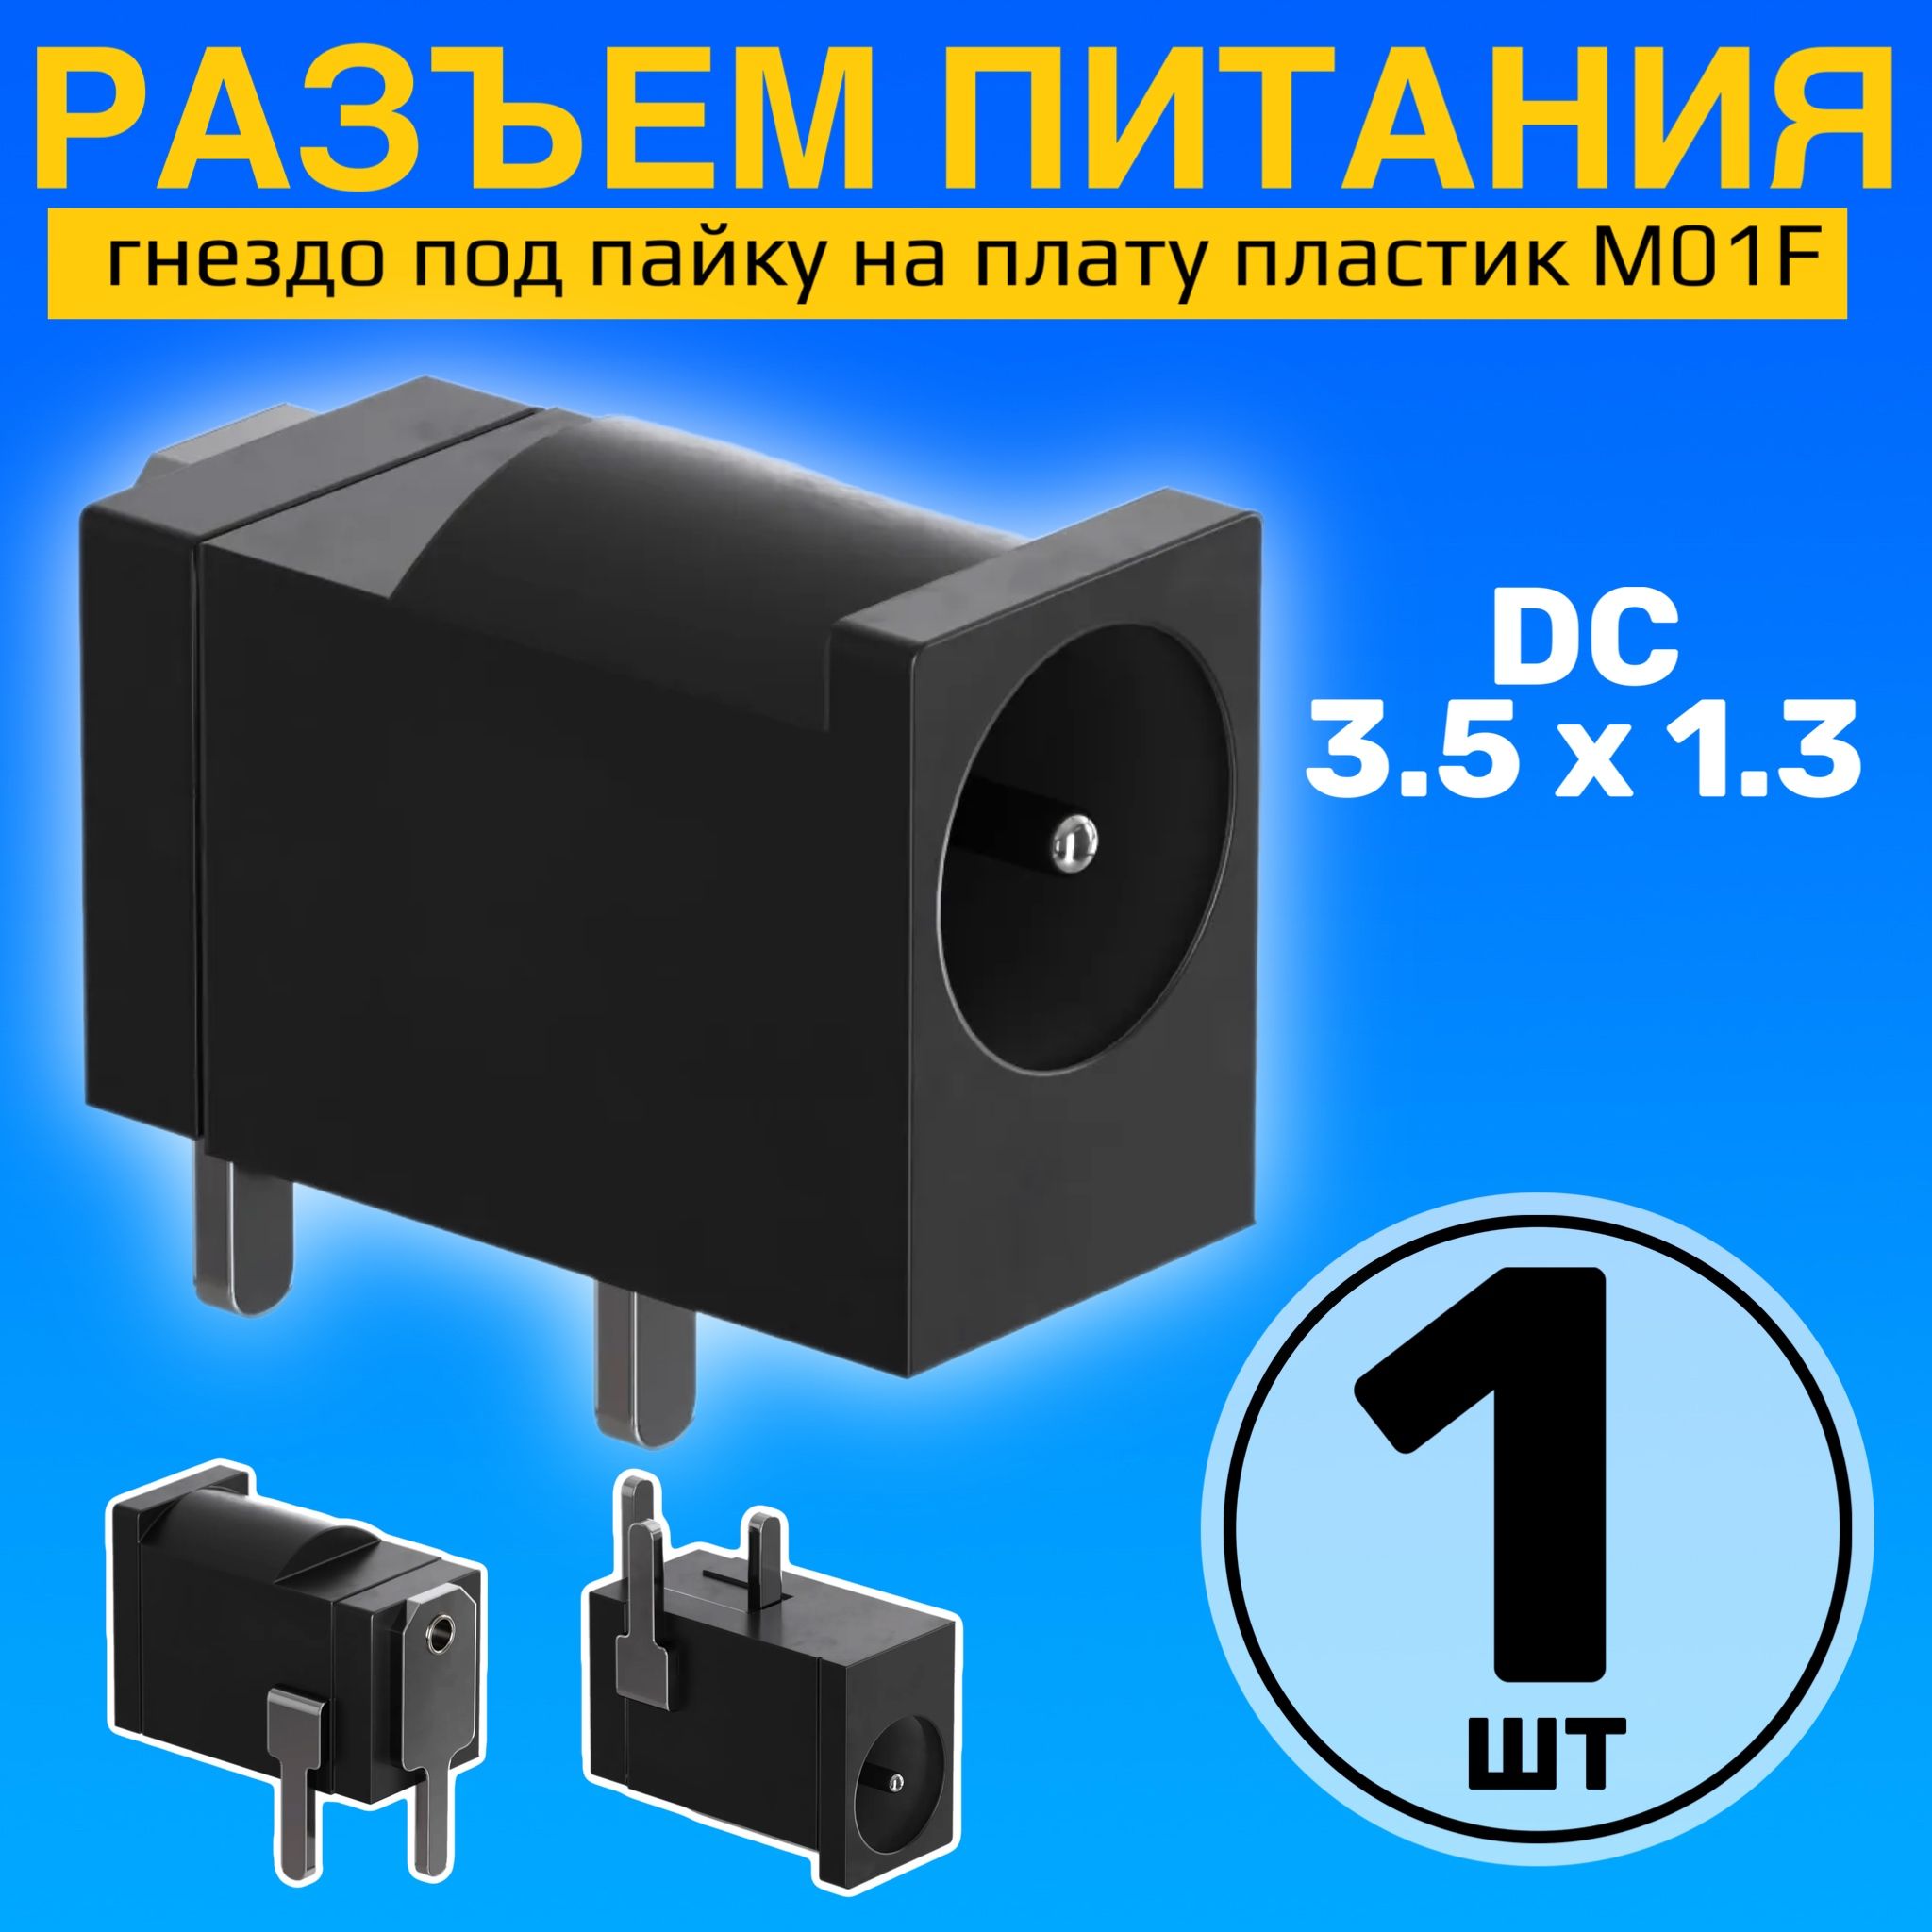 РазъемпитанияDC3.5x1.3гнездоподпайкунаплатупластикGSMINM01F(Черный)